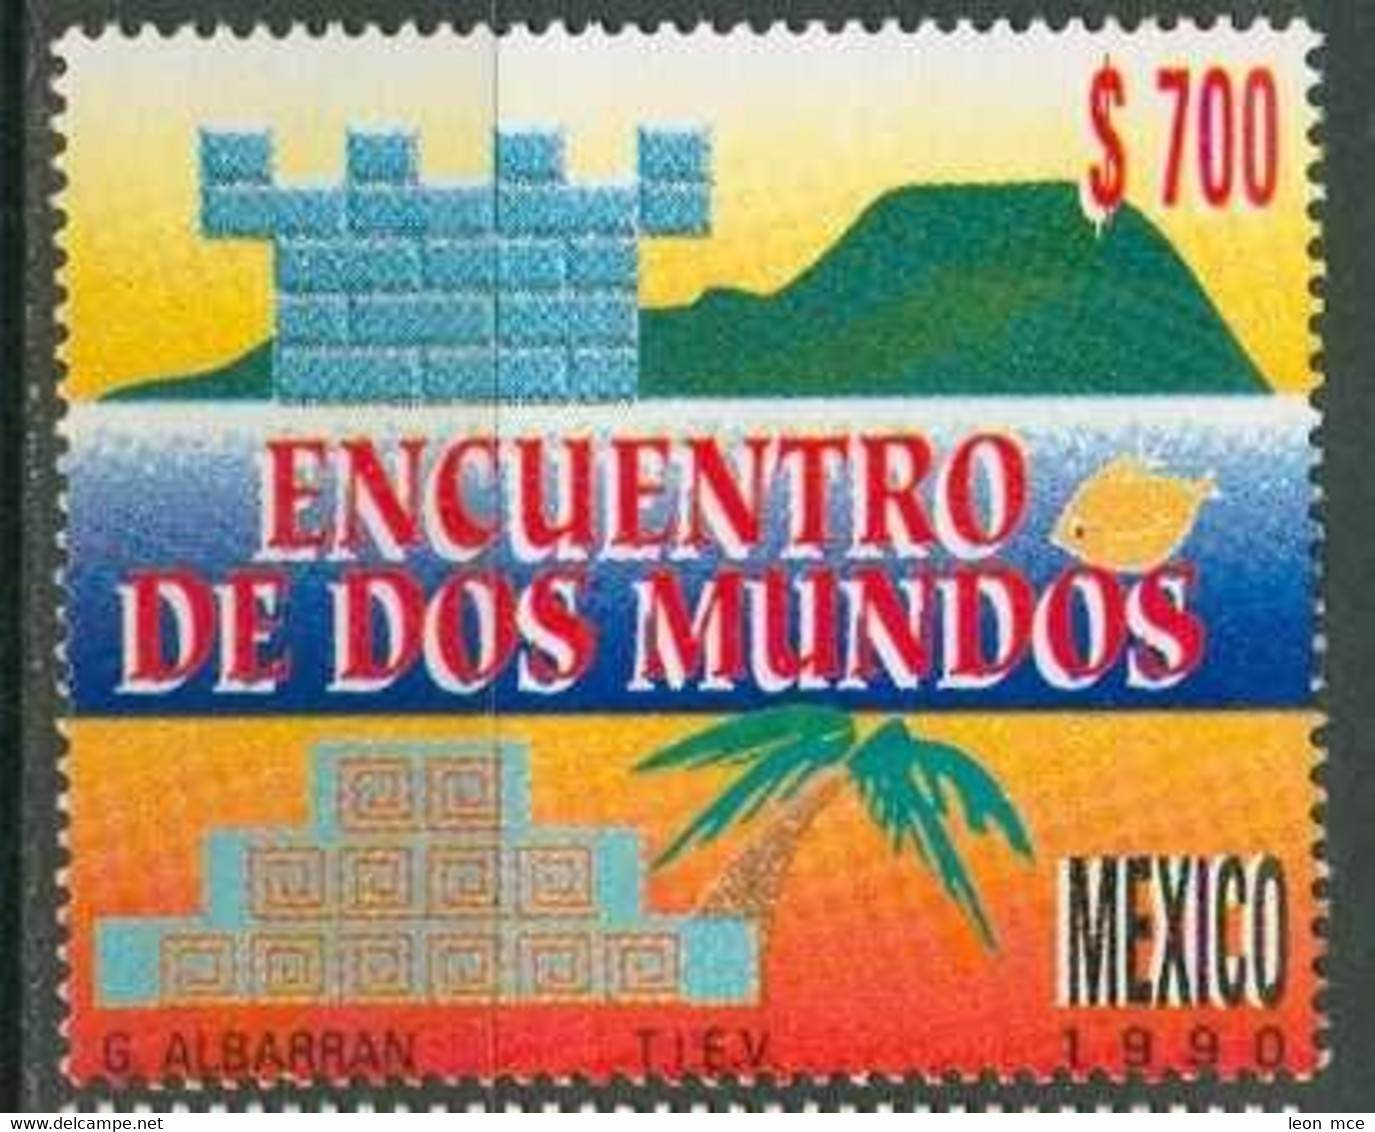 1990 MÉXICO ENCUENTRO DE DOS MUNDOS Sc. 1668 MNH, Discovery Of America - México